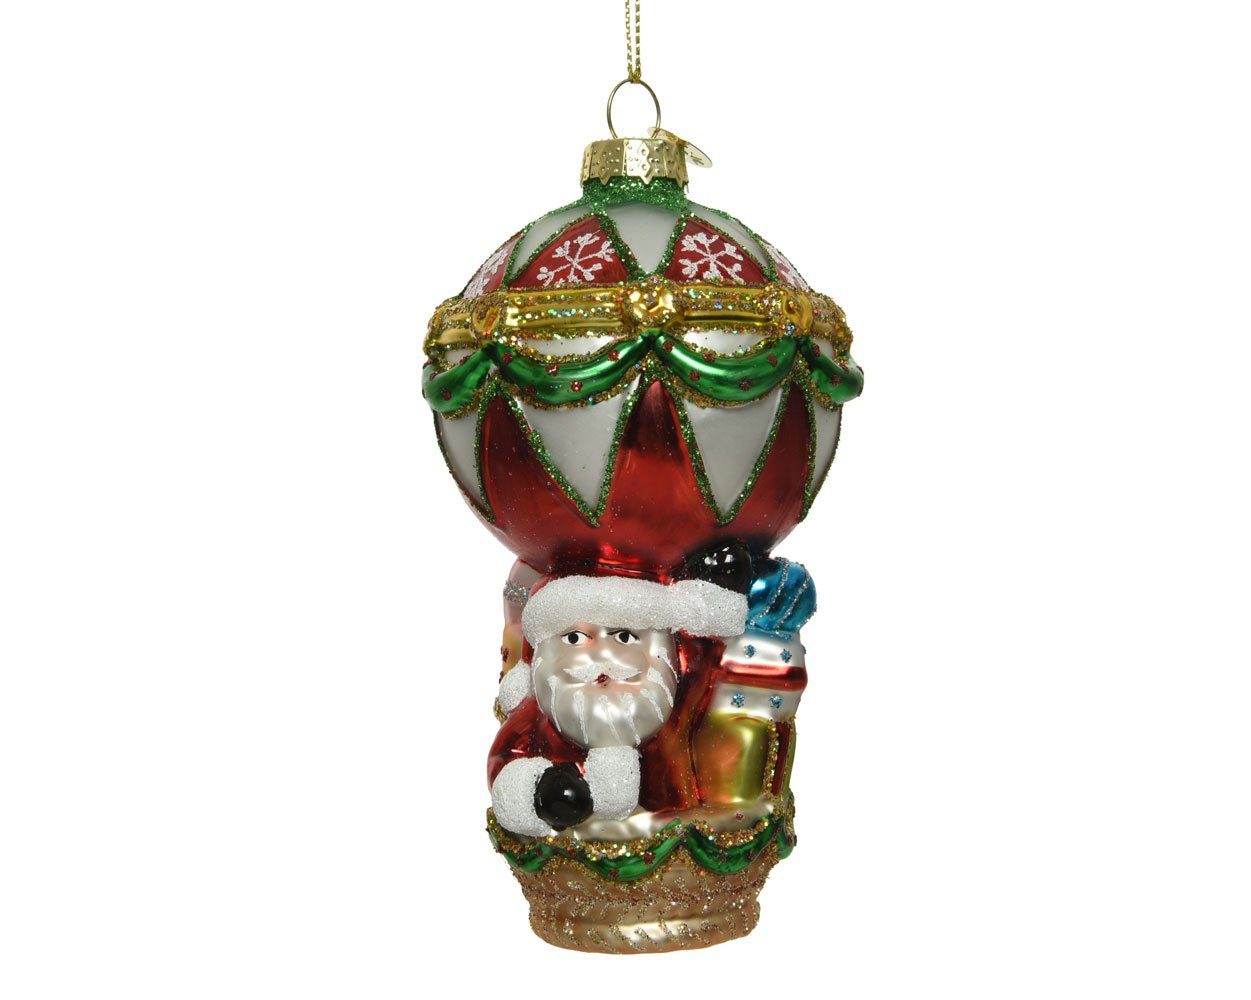 Heißluftballon Glas Christbaumschmuck, bunt Weihnachtsmann decorations season Christbaumschmuck 13cm im Decoris